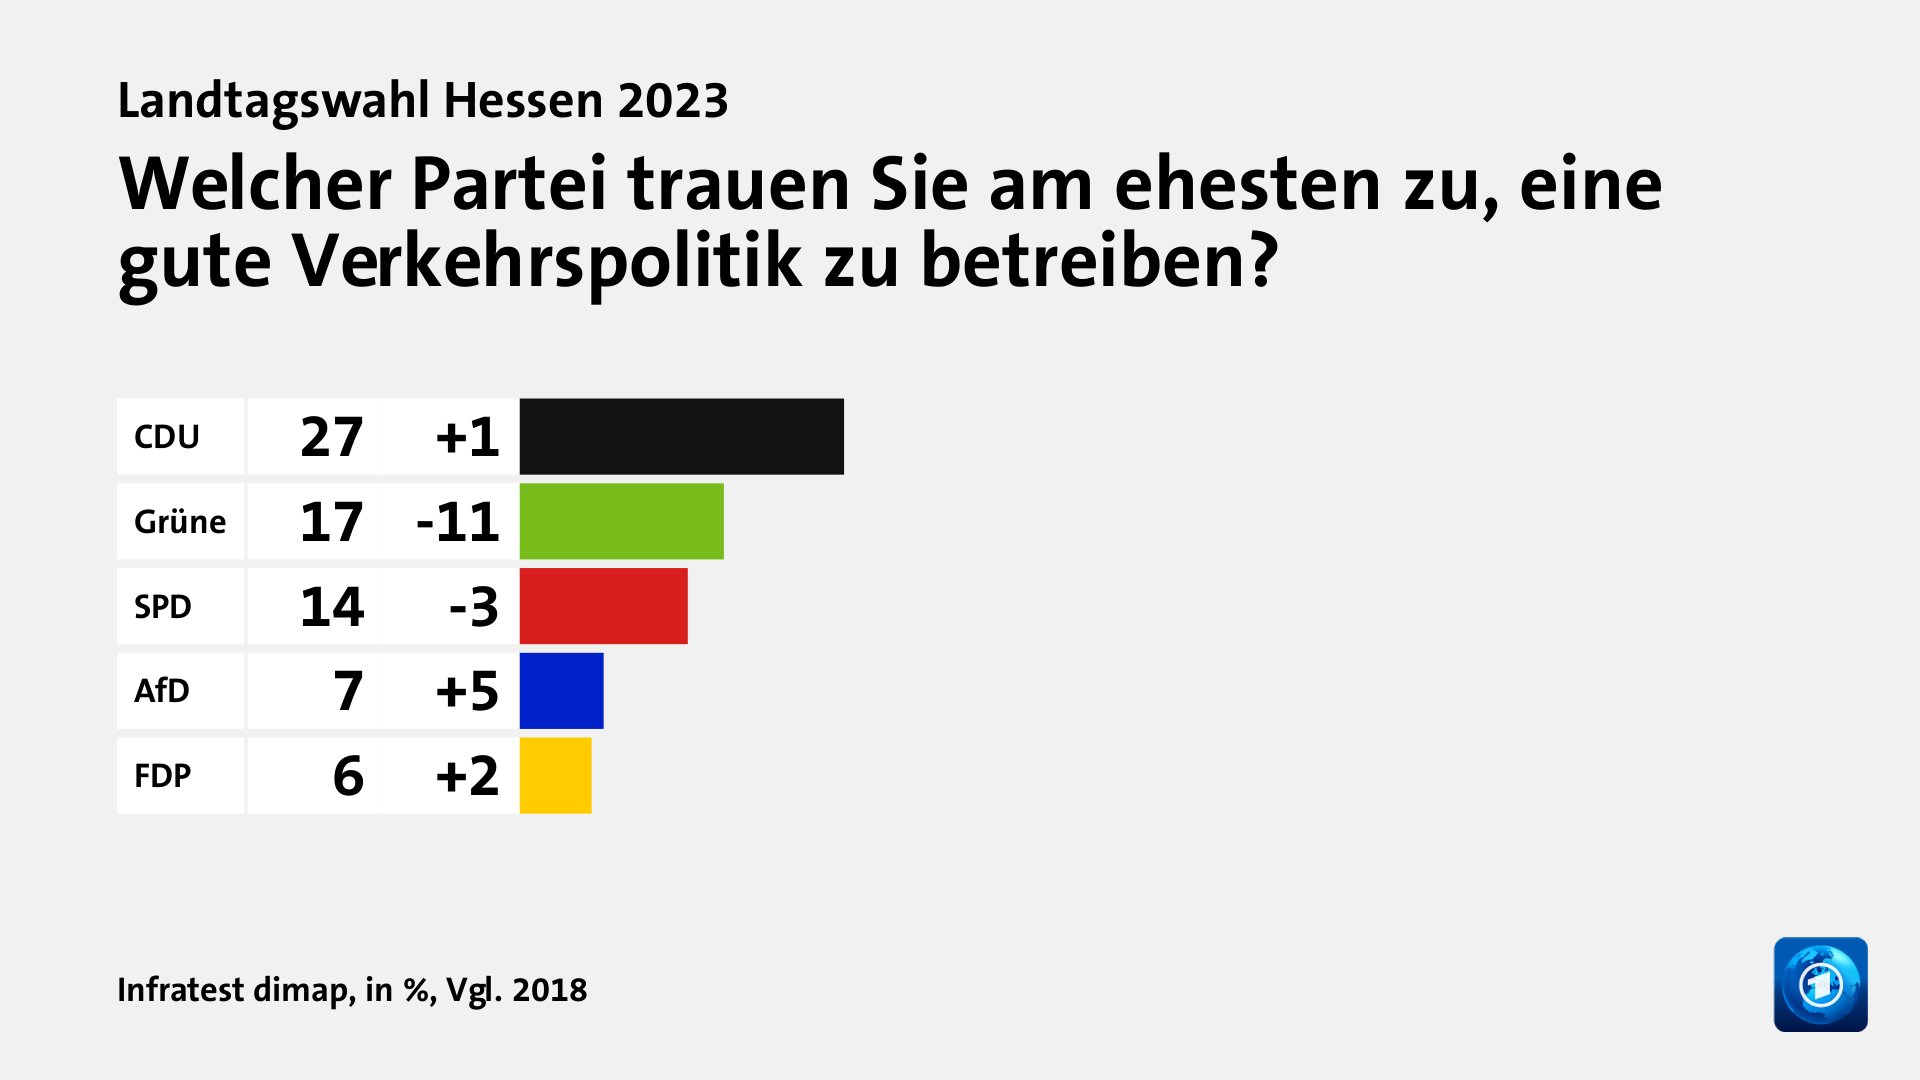 Welcher Partei trauen Sie am ehesten zu, eine gute Verkehrspolitik zu betreiben?, in %, Vgl. 2018: CDU 27, Grüne 17, SPD 14, AfD 7, FDP 6, Quelle: Infratest dimap